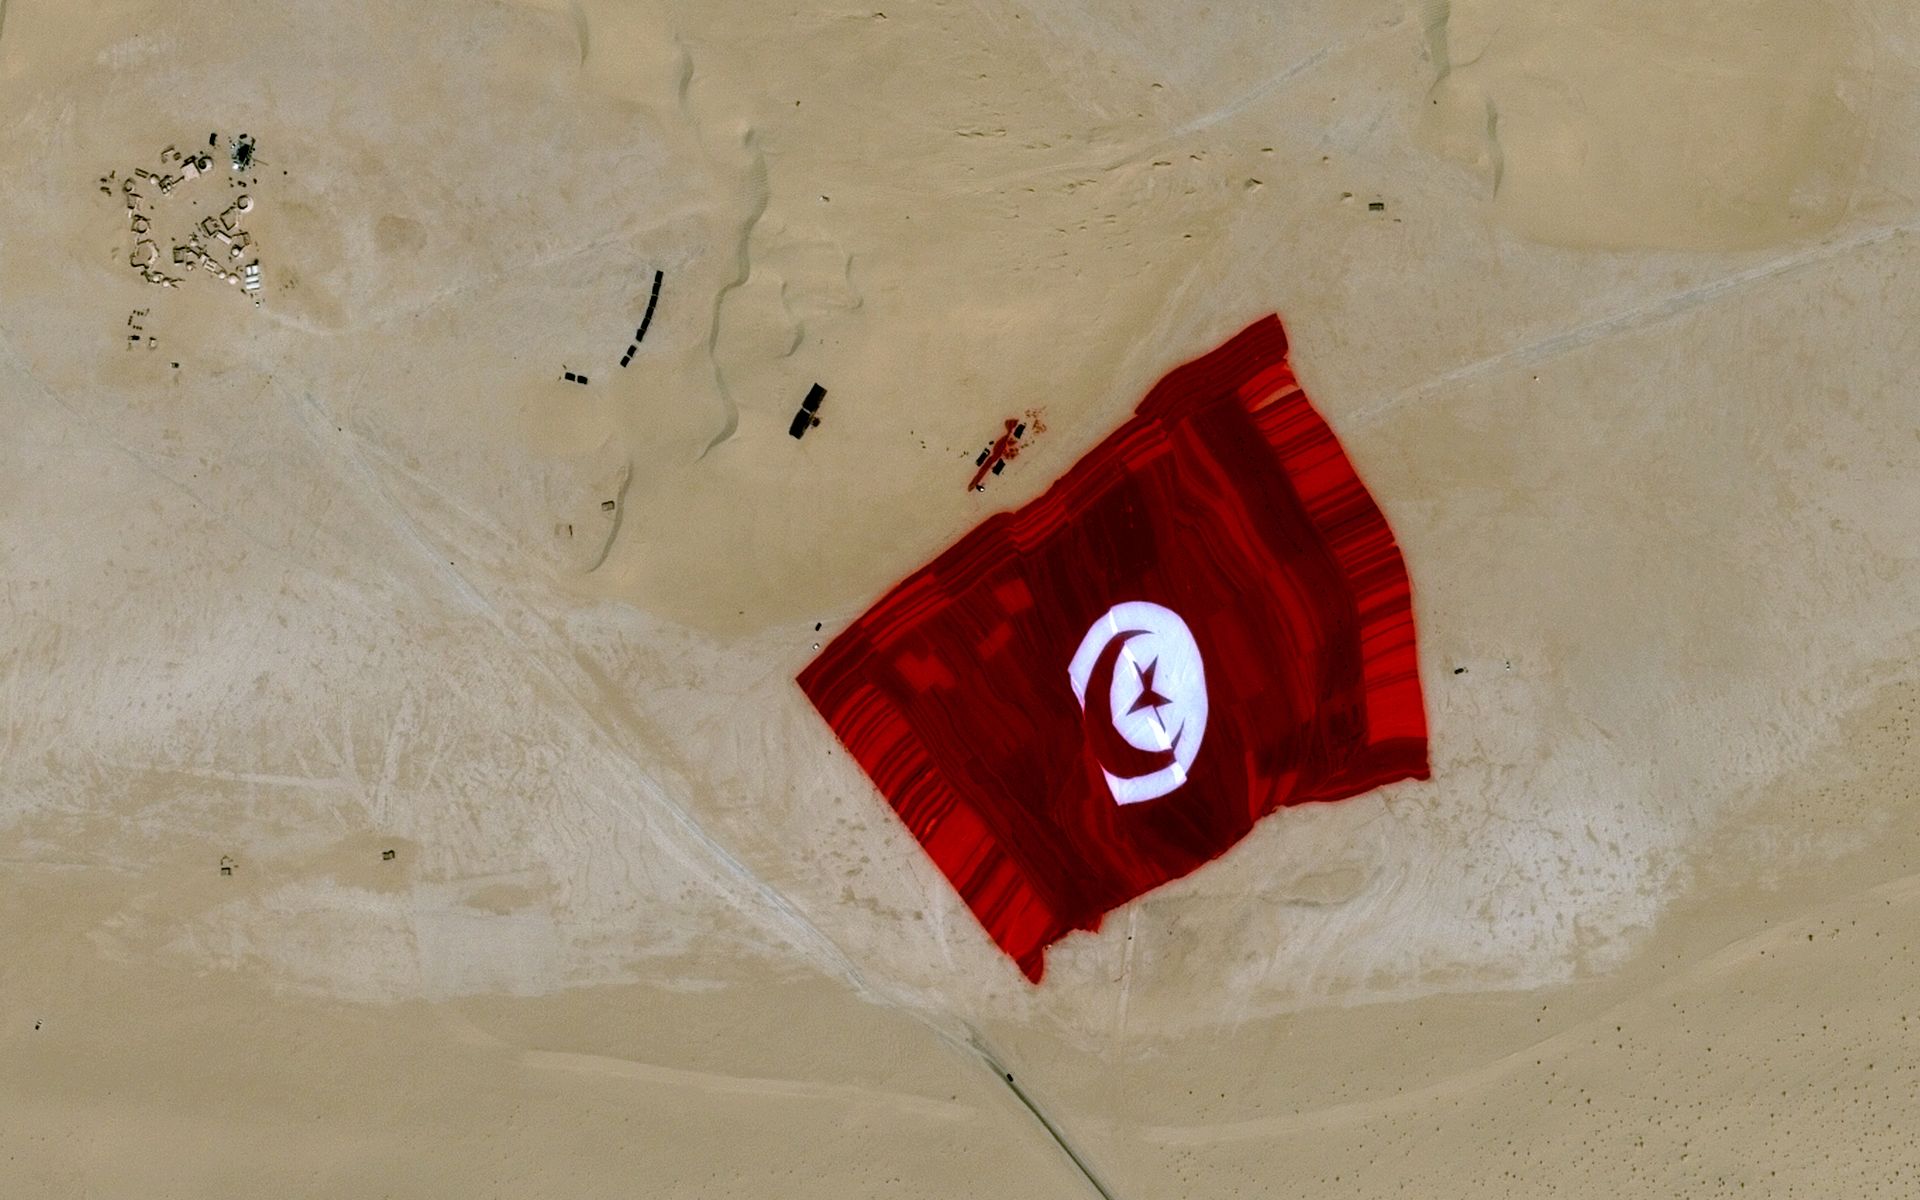 Tunisie - Drapeau tunisien géant - Tunisian flag - Record - Guinness book - Pleiades - Tozeur - Plus grand drapeau du monde - Largest flag - satellite - CNES - Airbus DS - 2 mai 2015 - Tozeur - Nous sommes Tunisie